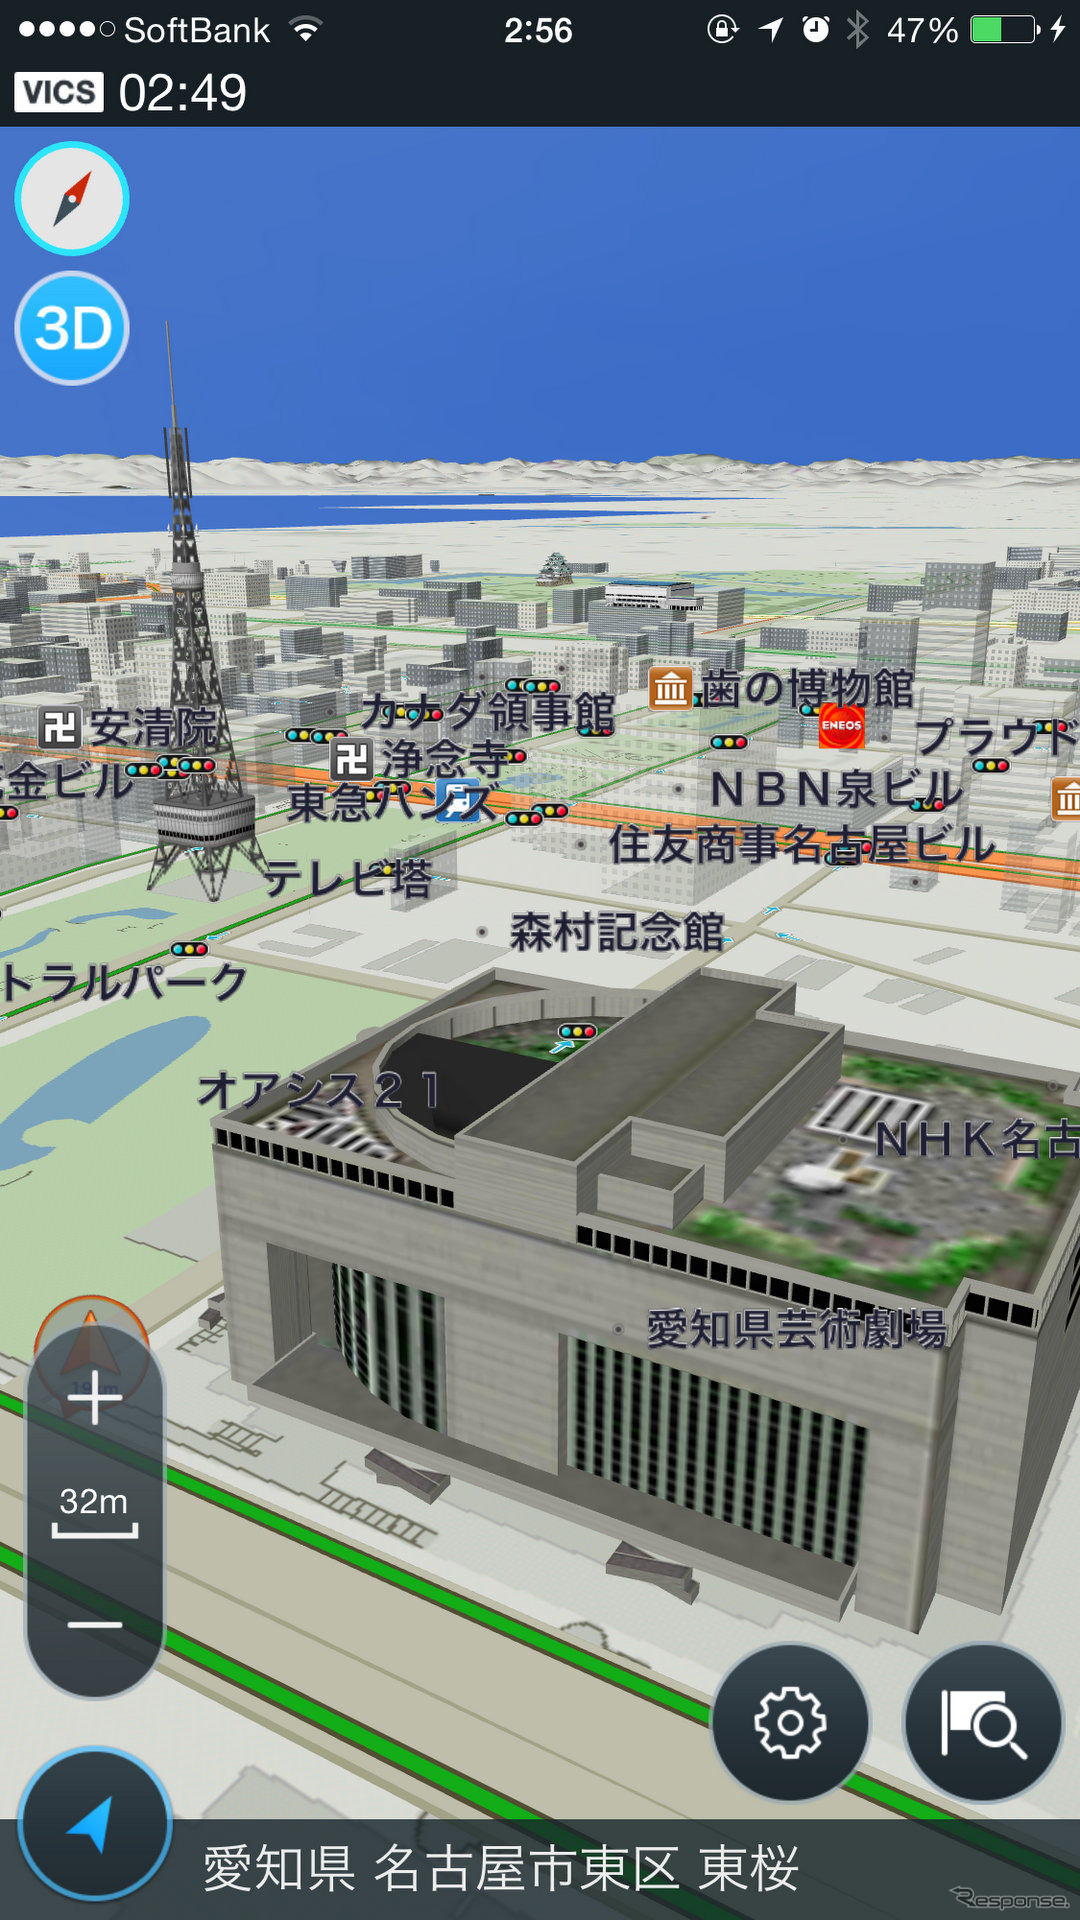 名古屋の繁華街を表示させたところ。テレビ塔や劇場が忠実に再現されている。